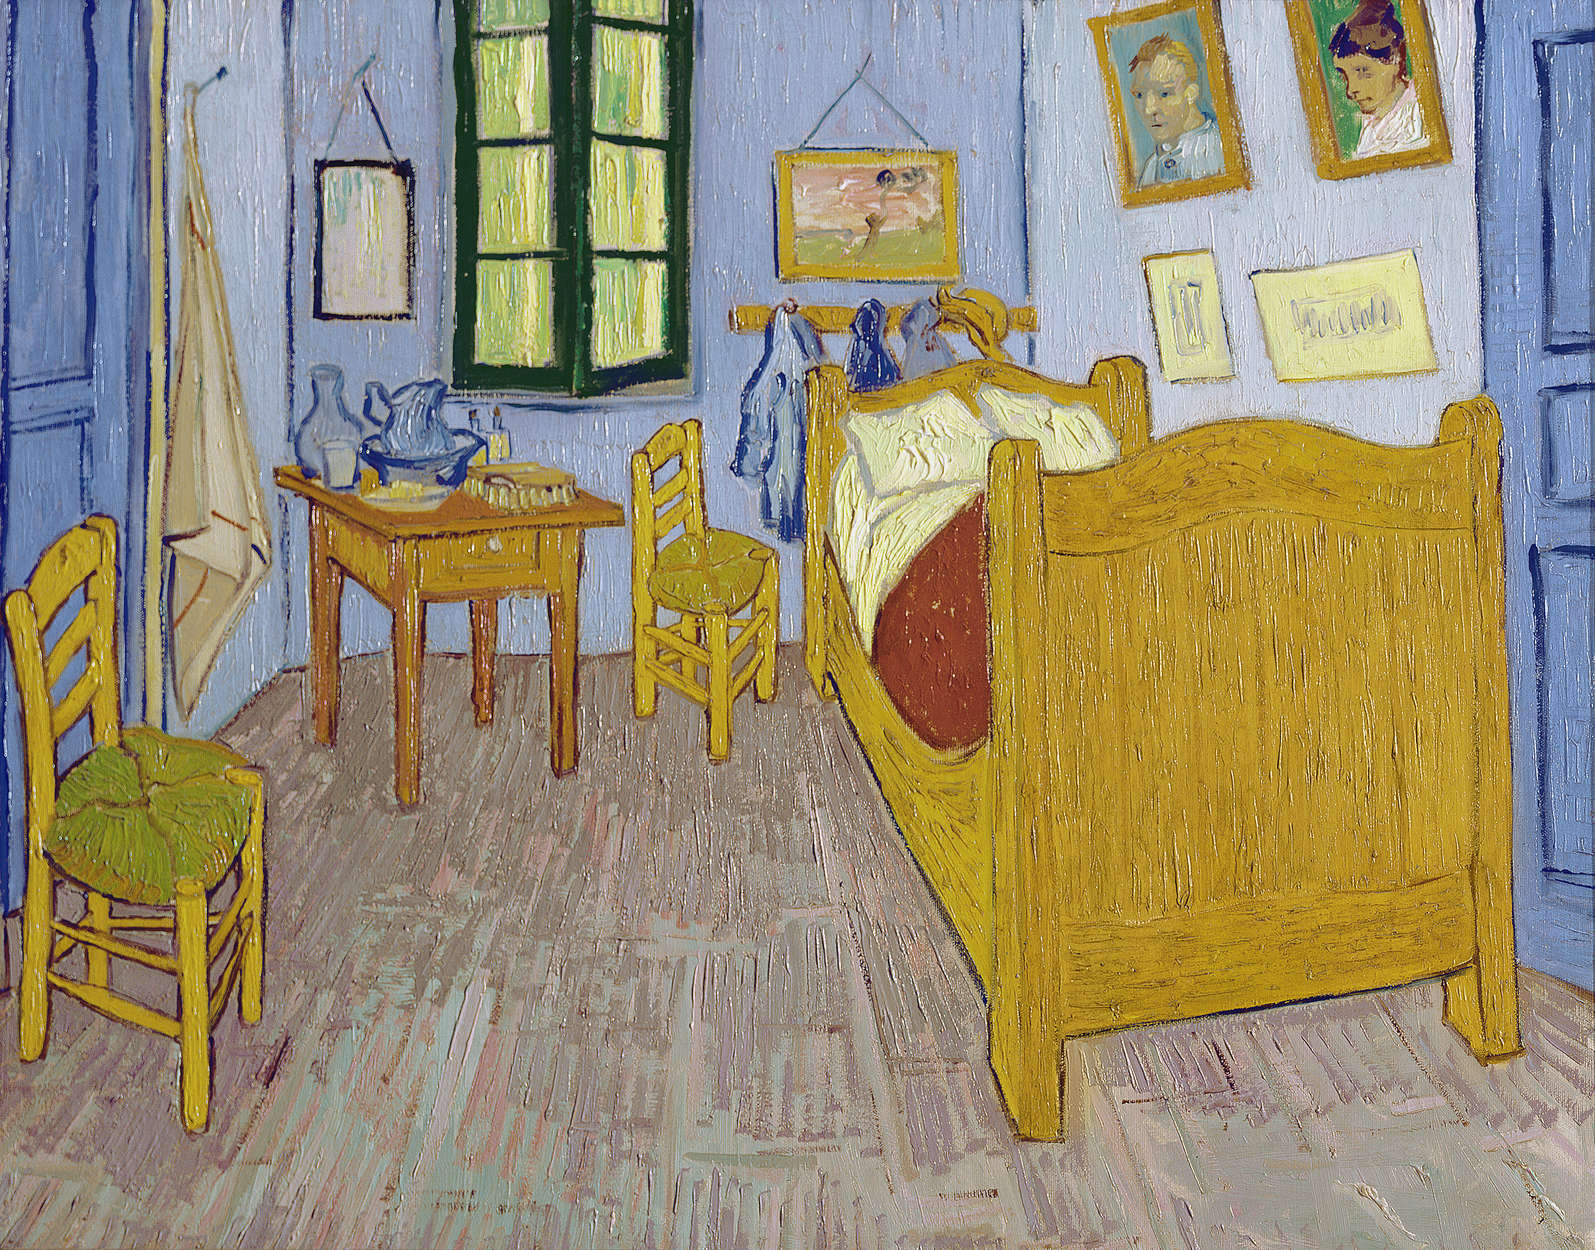             Fototapete "Vincents Schlafzimmer in Arles" von Vincent van Gogh
        